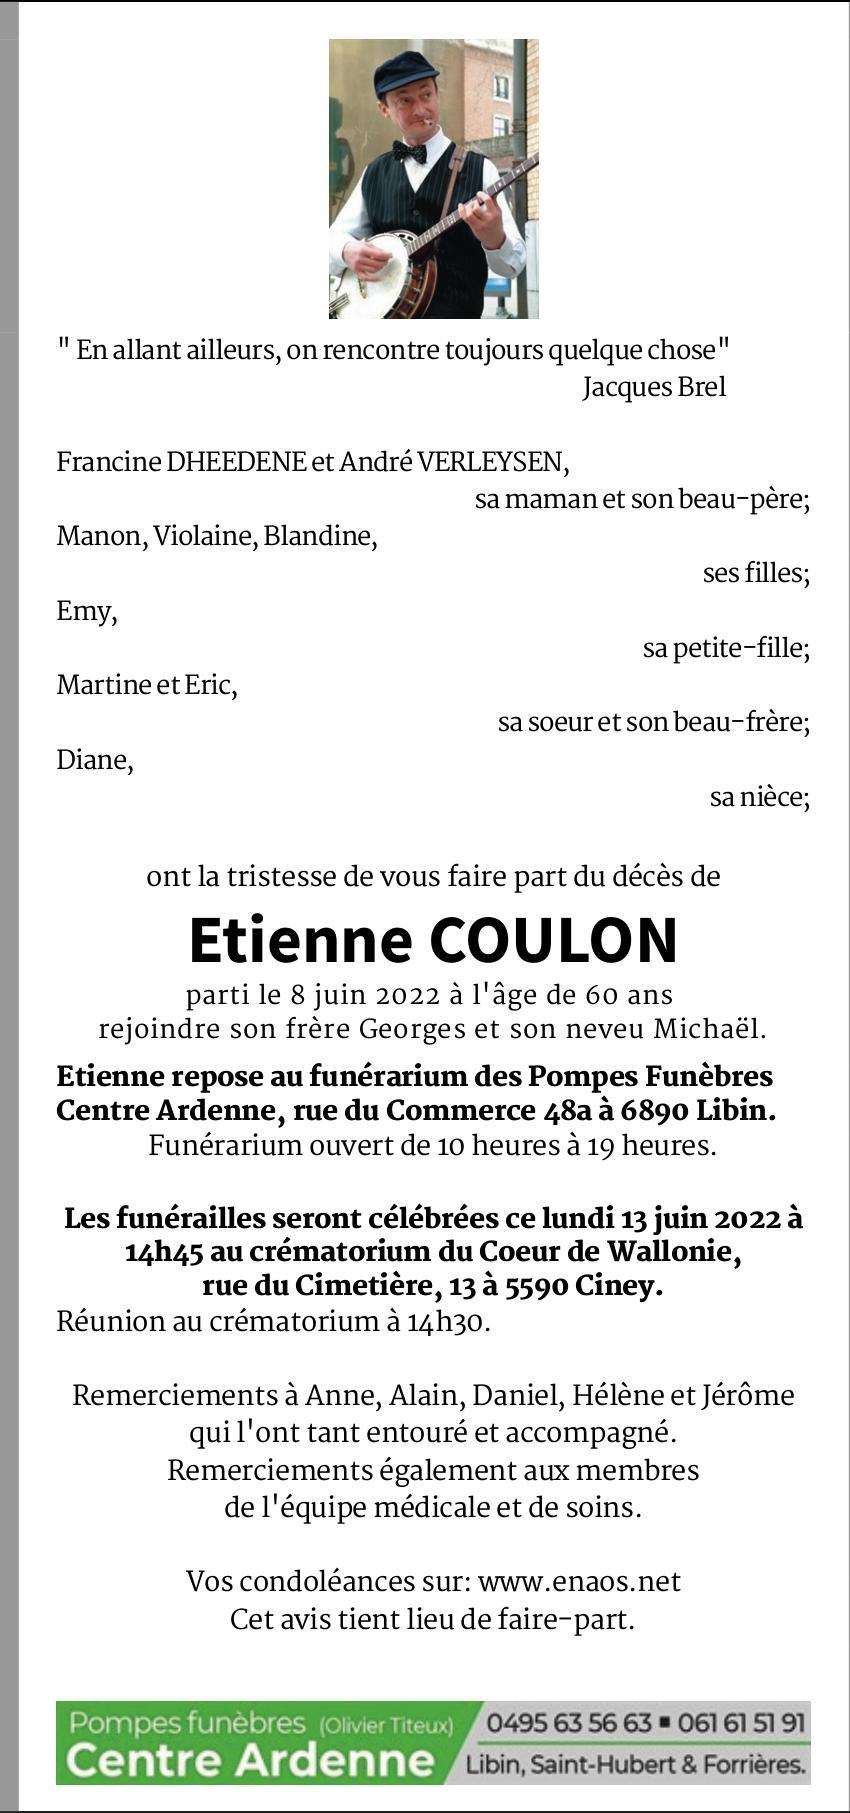 Etienne coulon